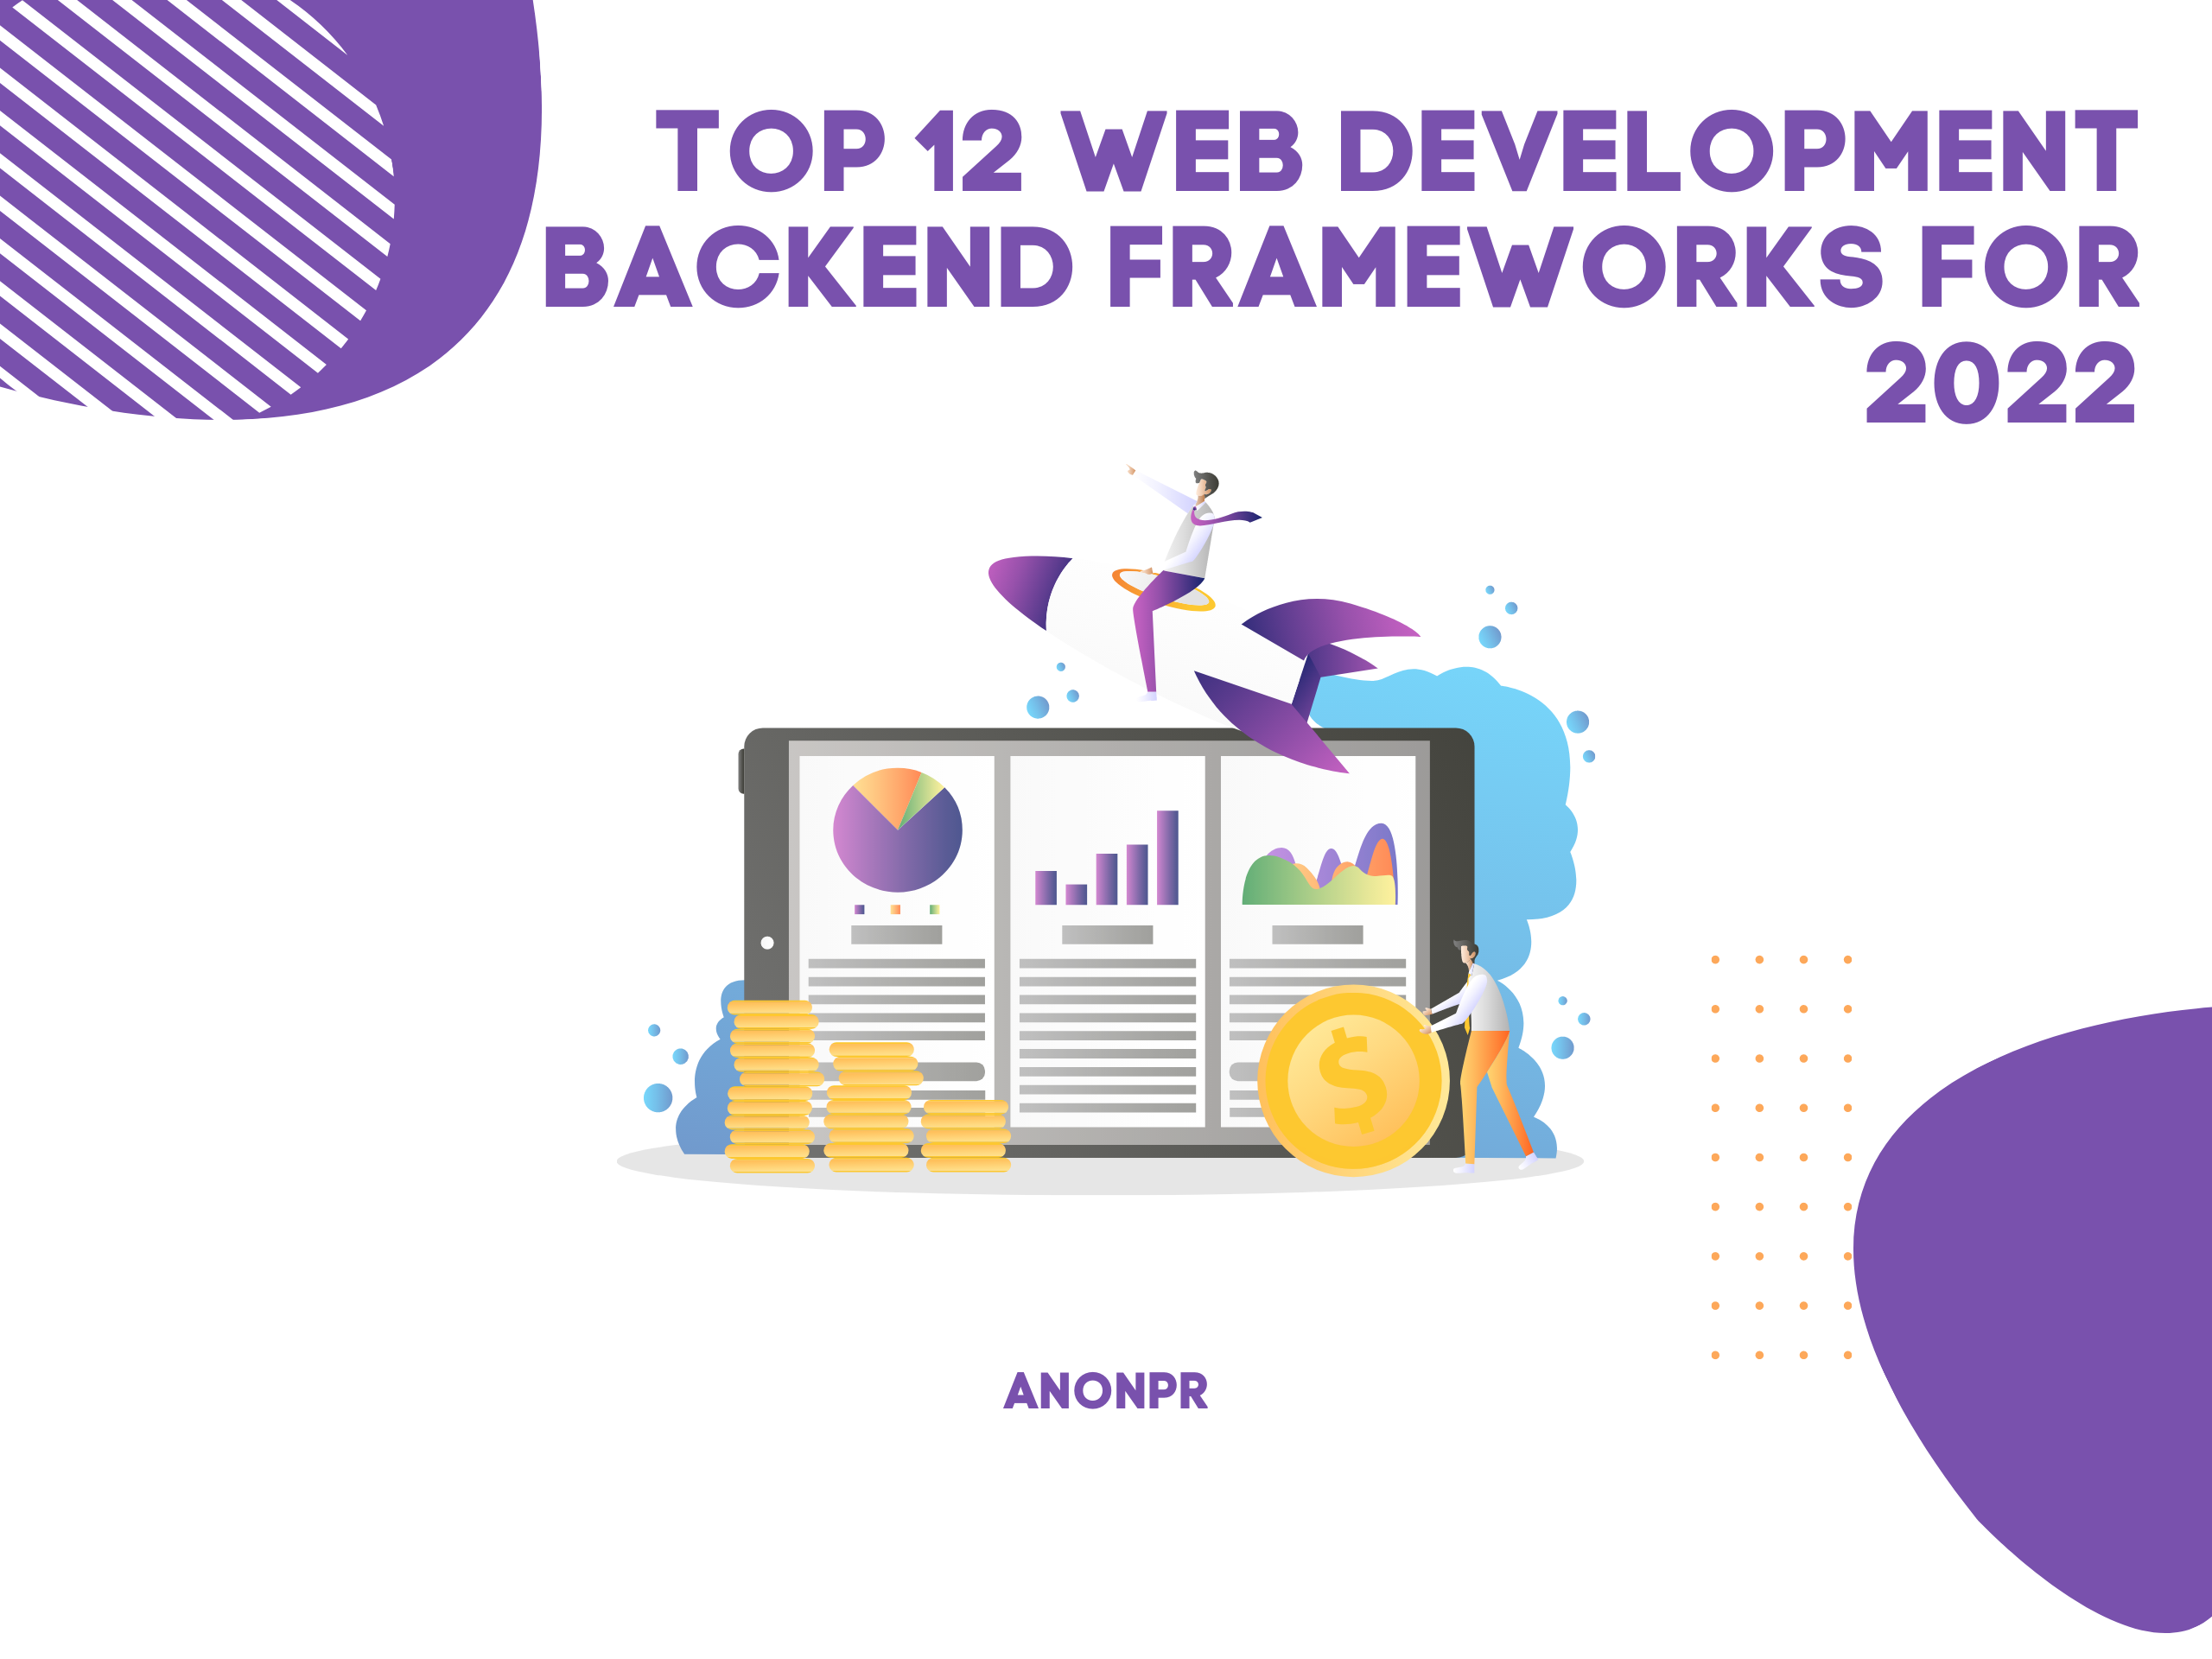 public/uploads/2022/04/Top-12-Web-Development-Backend-Frameworks-for-2022.png